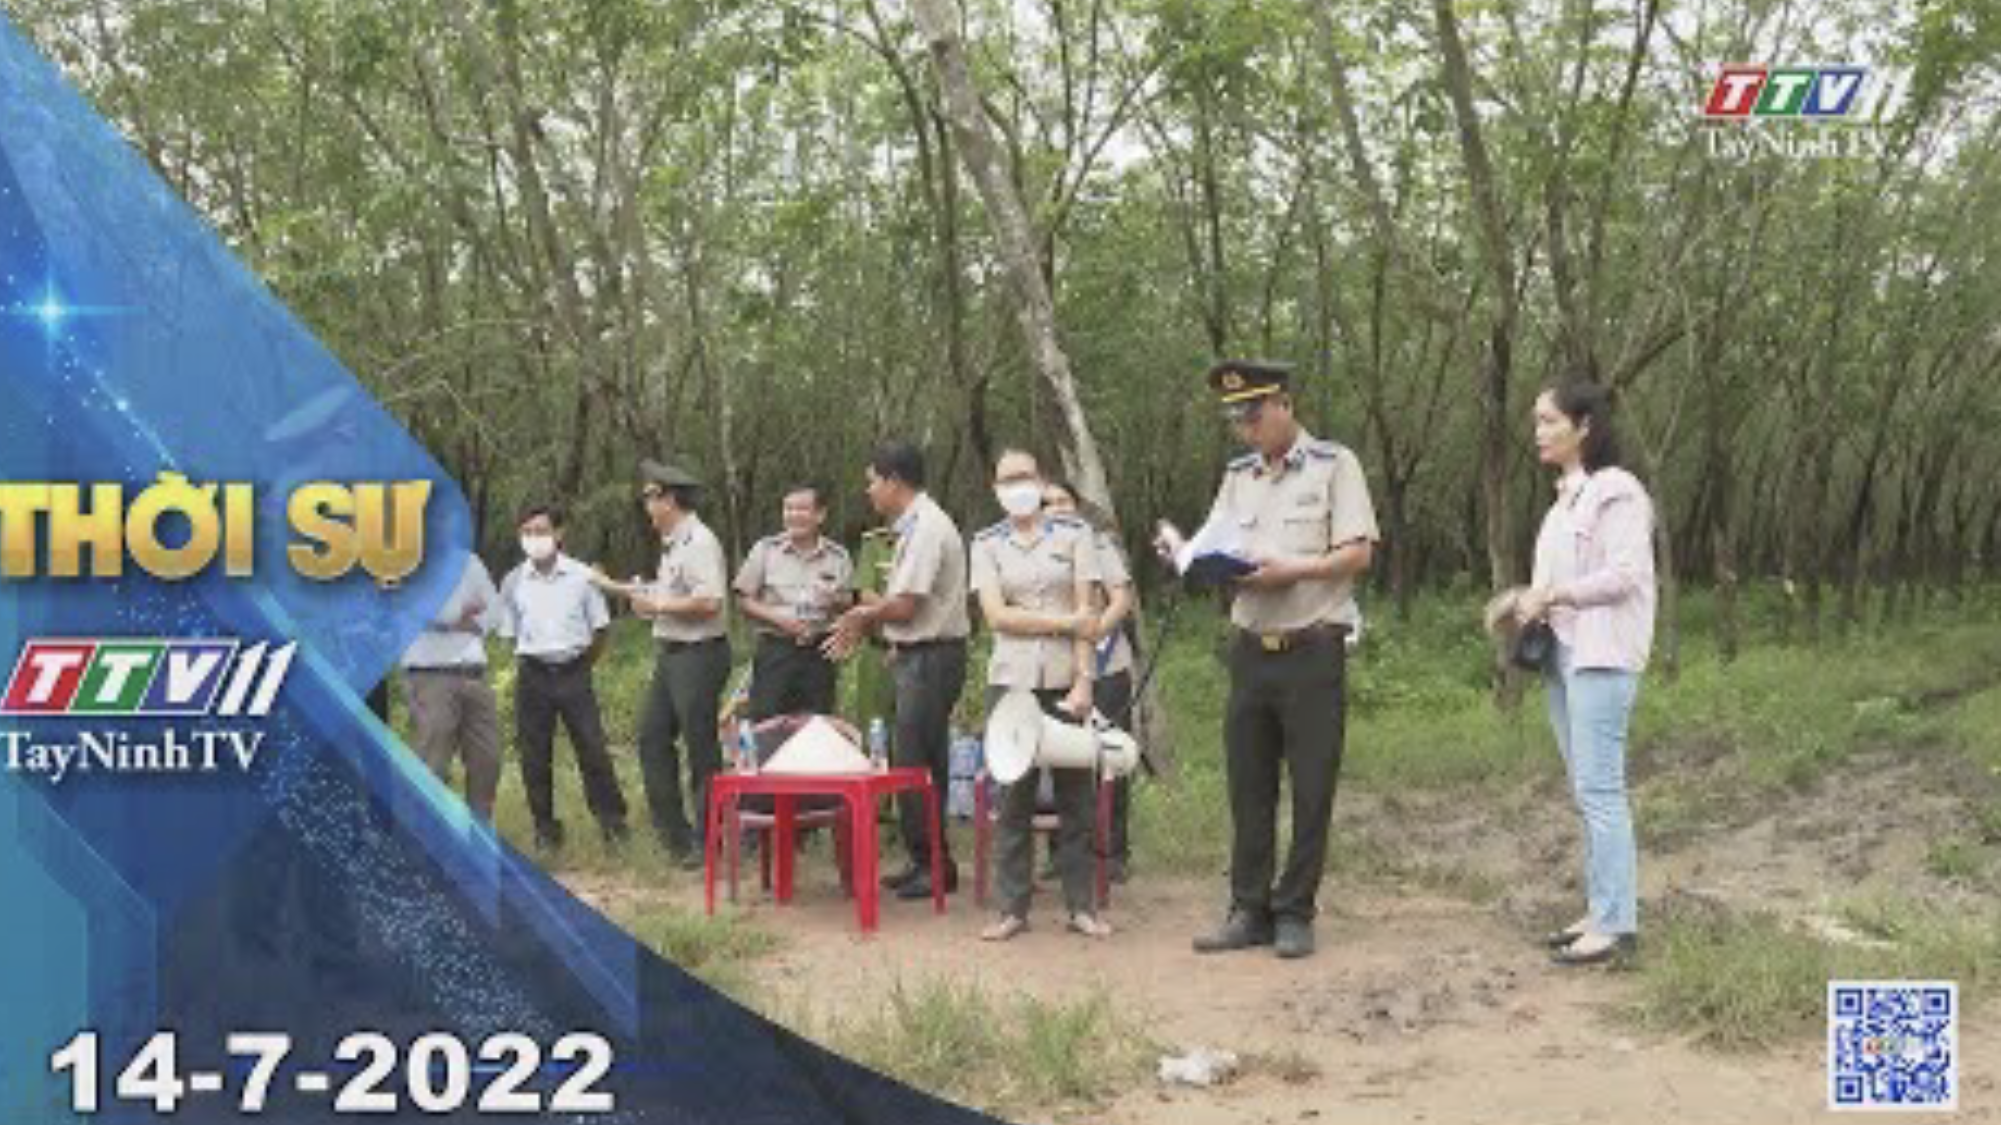 Thời sự Tây Ninh 14-7-2022 | Tin tức hôm nay | TayNinhTV